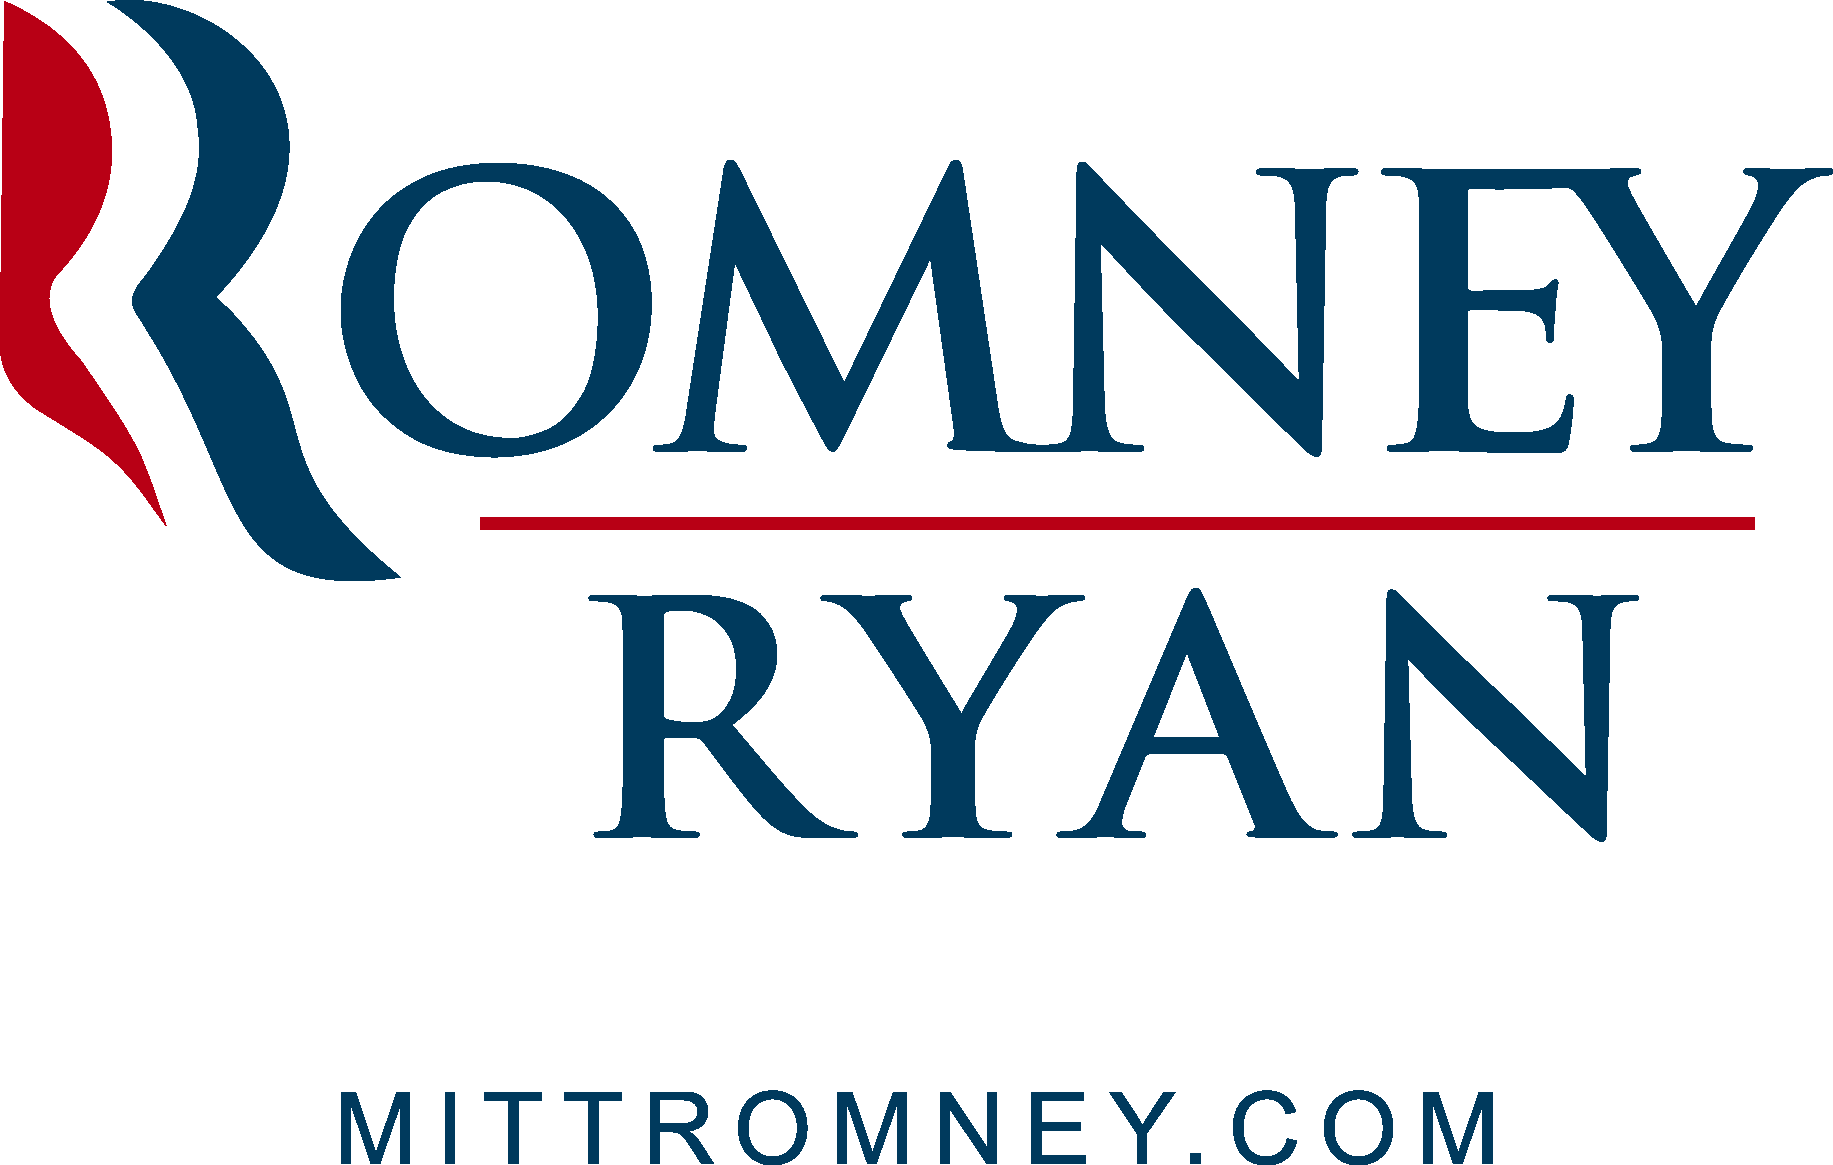 Romney Ryan Logo Vector